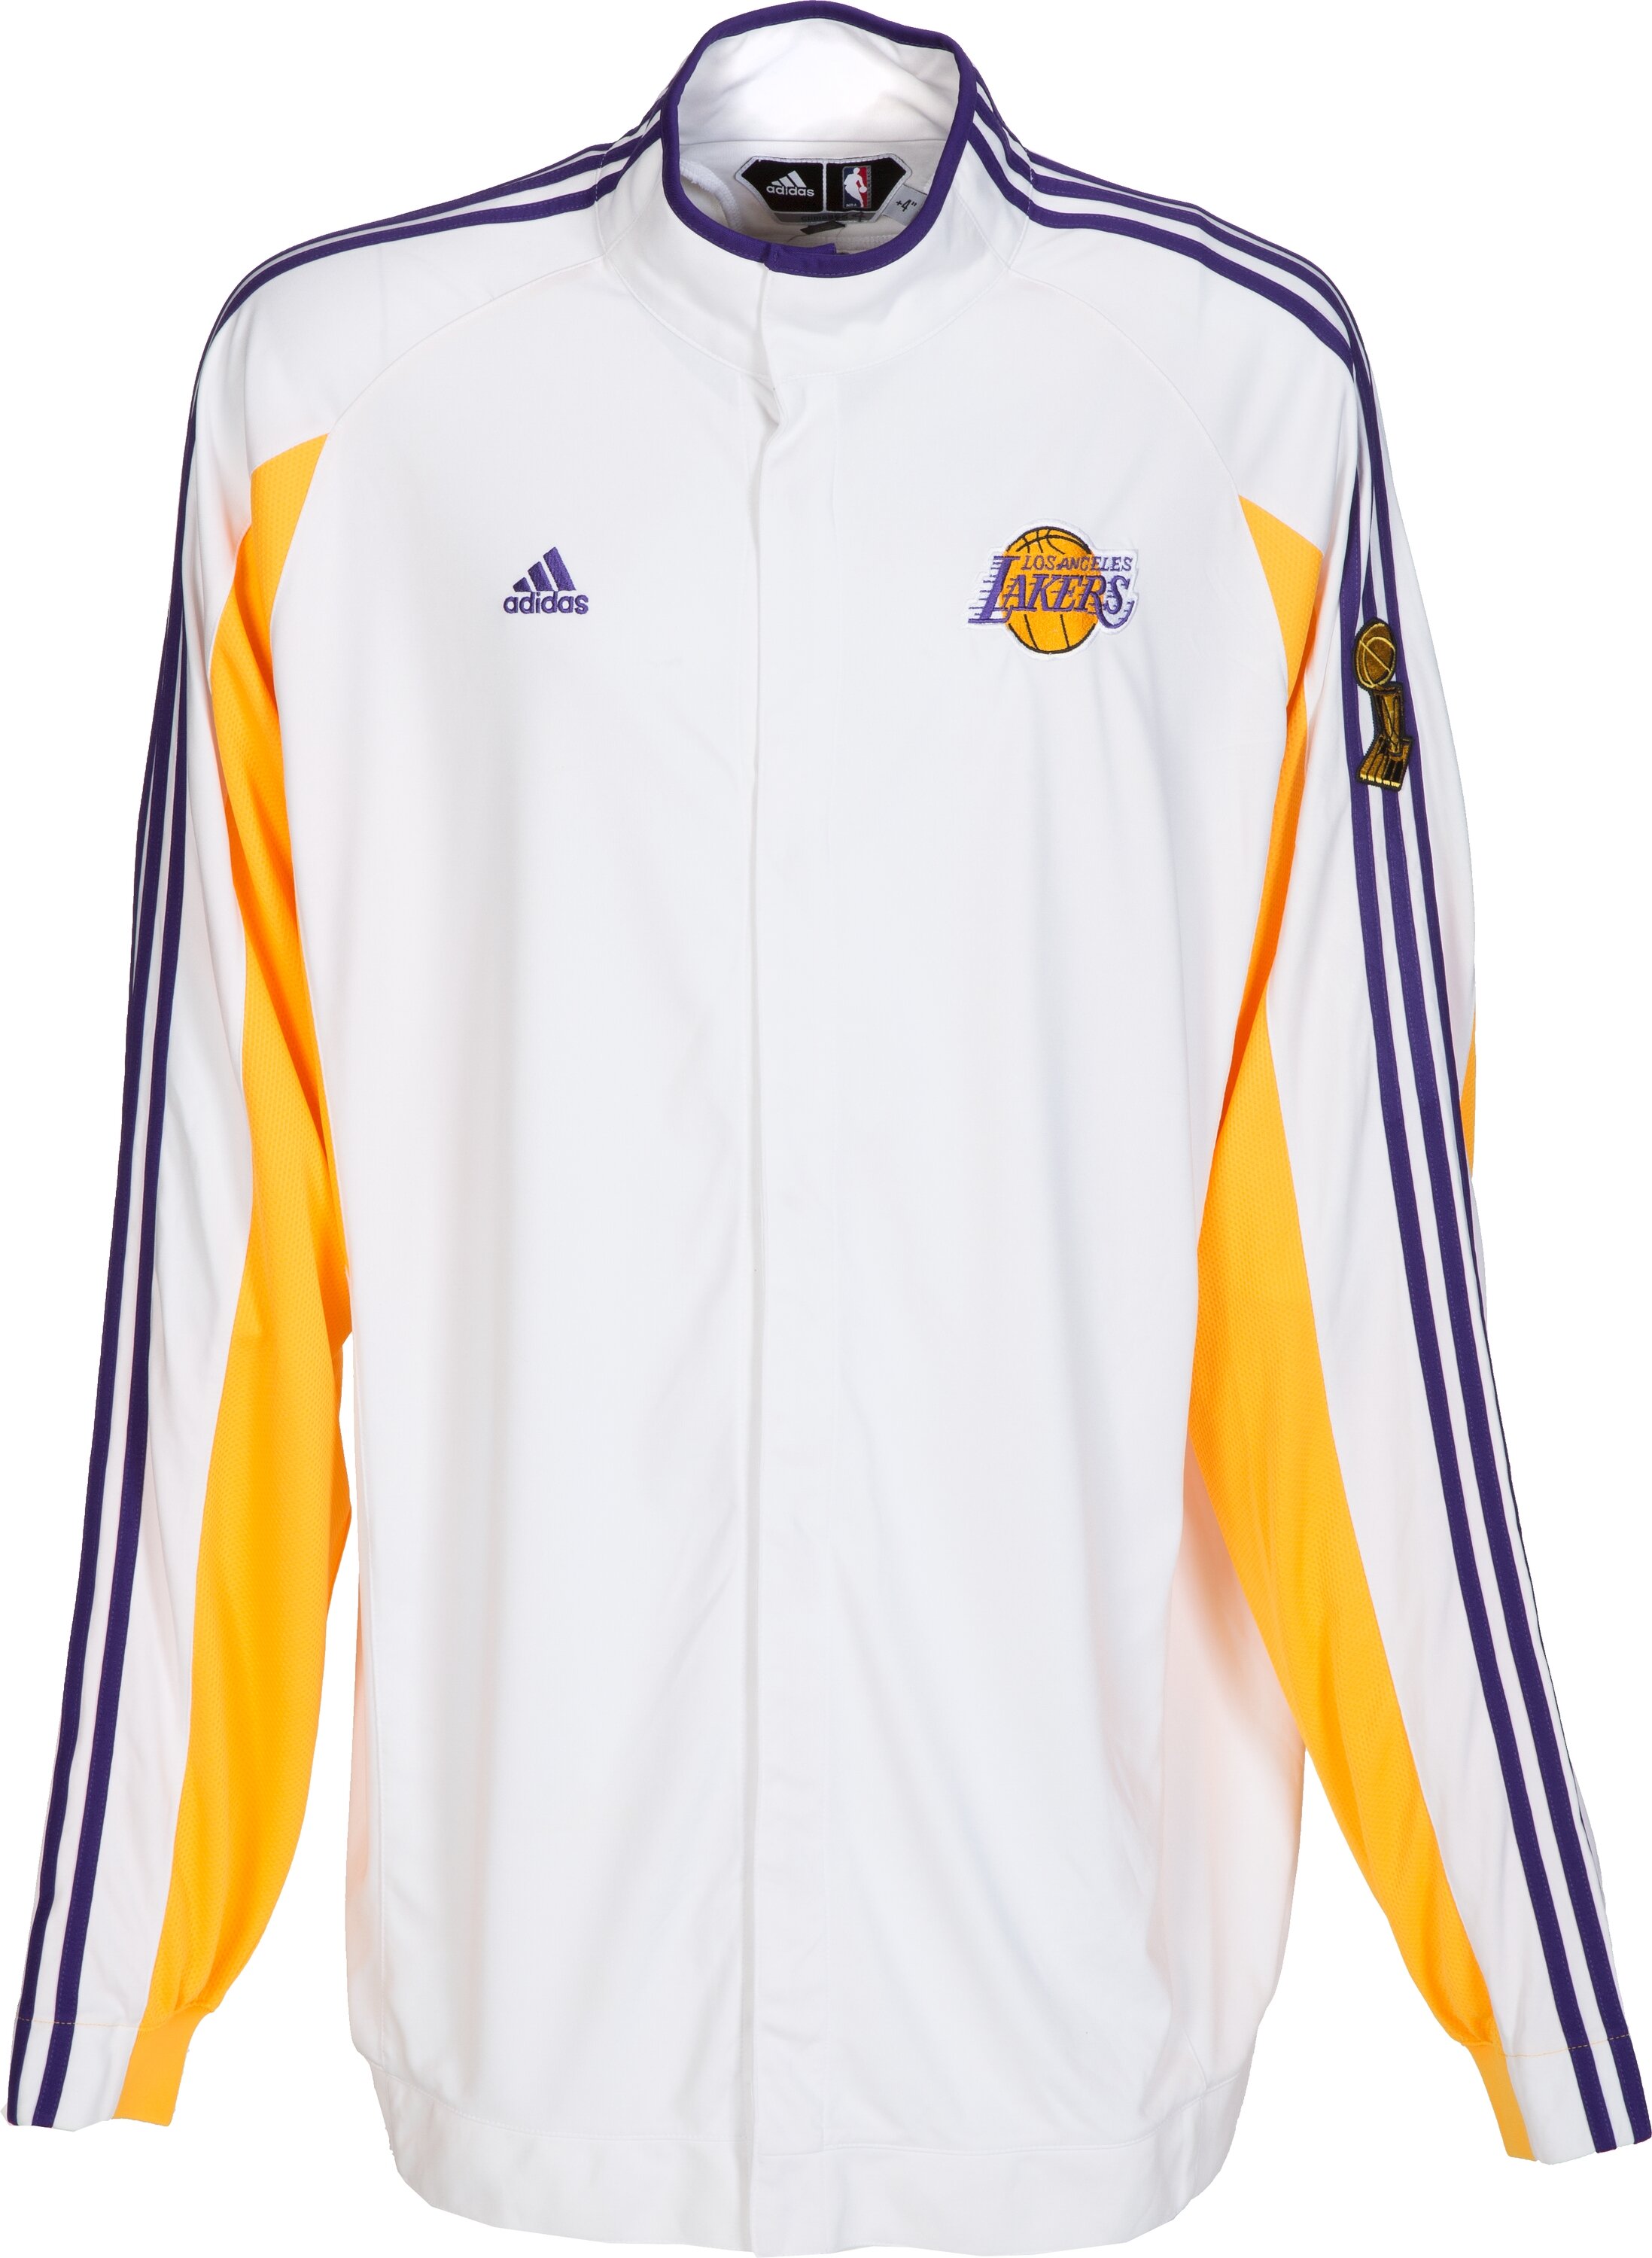 Adidas Hat Los Angles Lakers Kobe Bryant 2009 Conference Champions NBA  Finals